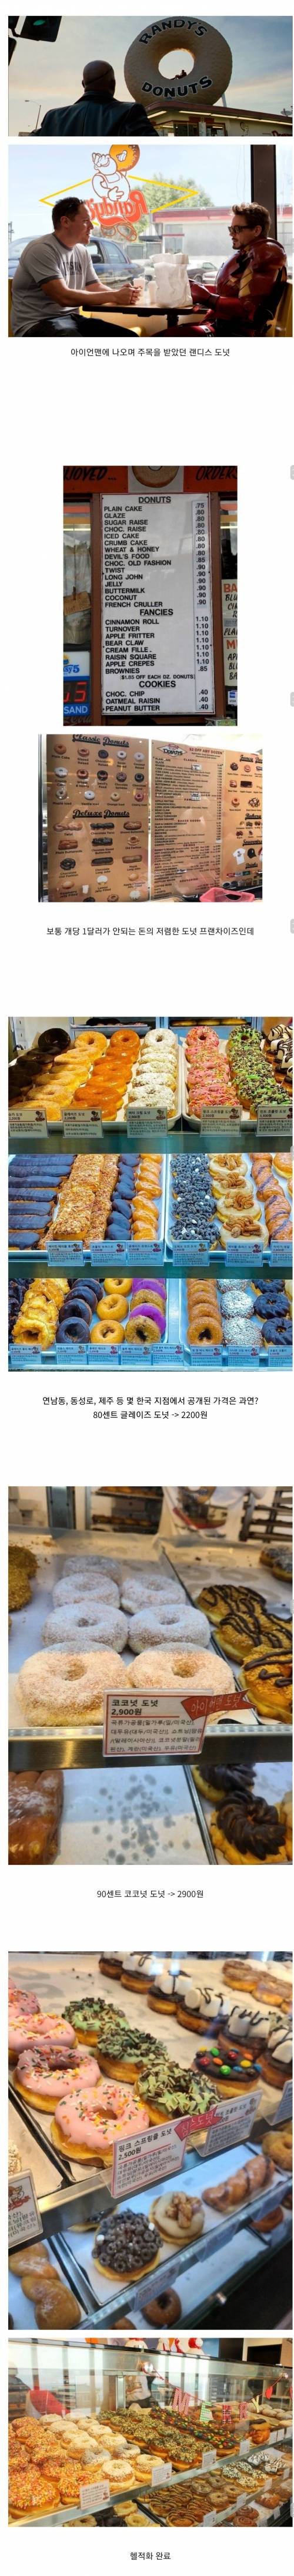 한국에 상륙한 아이언맨 도넛으로 유명한 랜디스 도넛